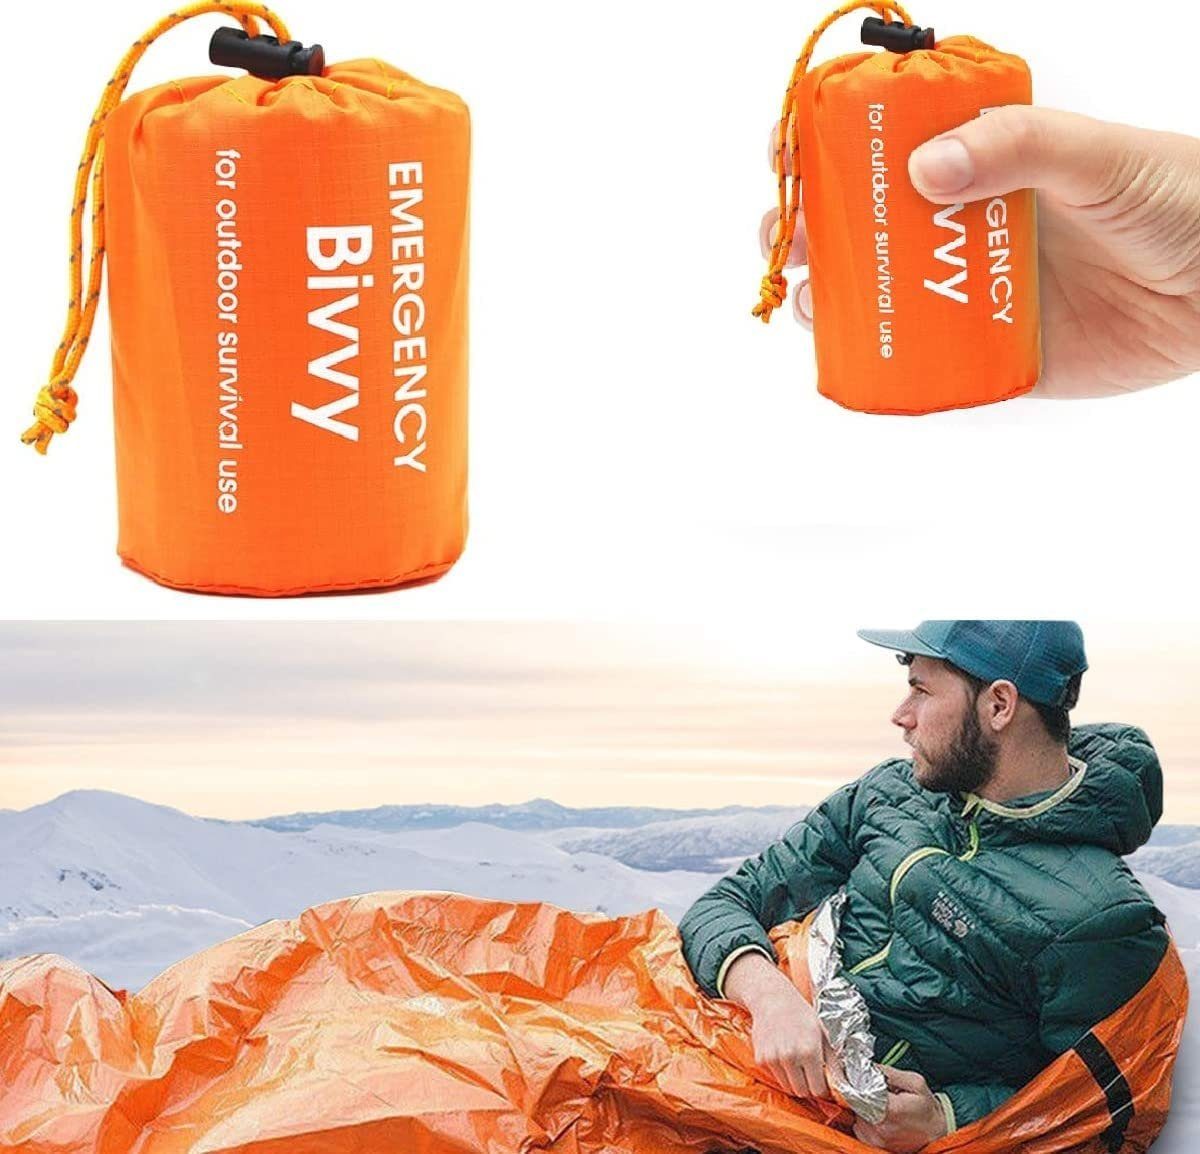 Groß Rettungsdecke Orange Biwaksack Survival Schlafsack Kälteschutz 